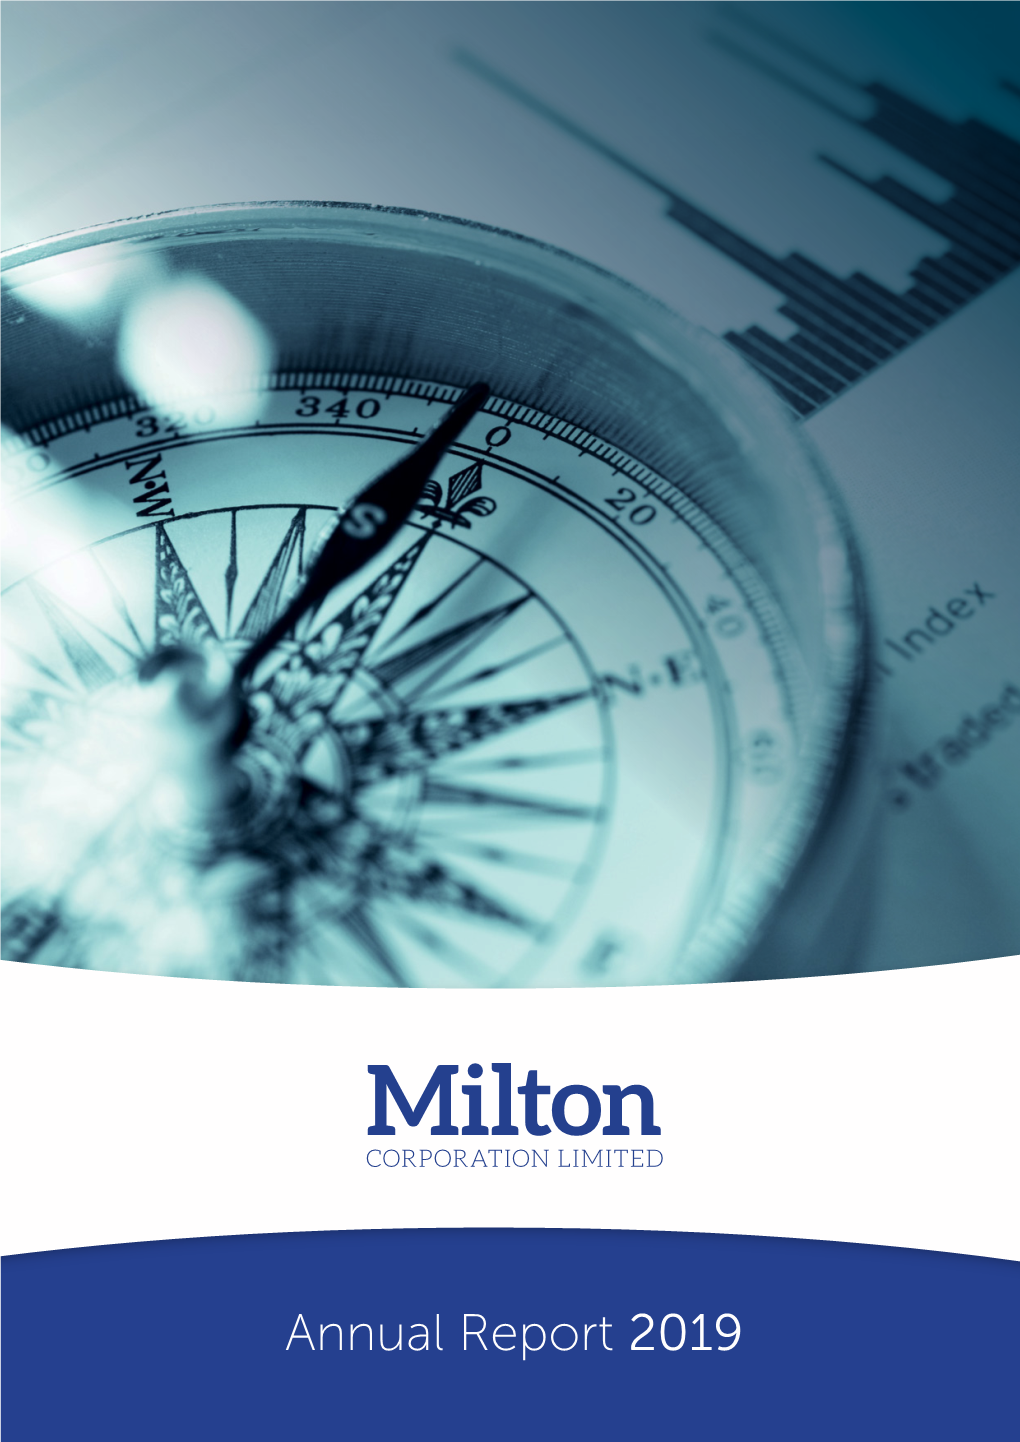 Annual Report 2019 Company Profile Milton Corporation Limited